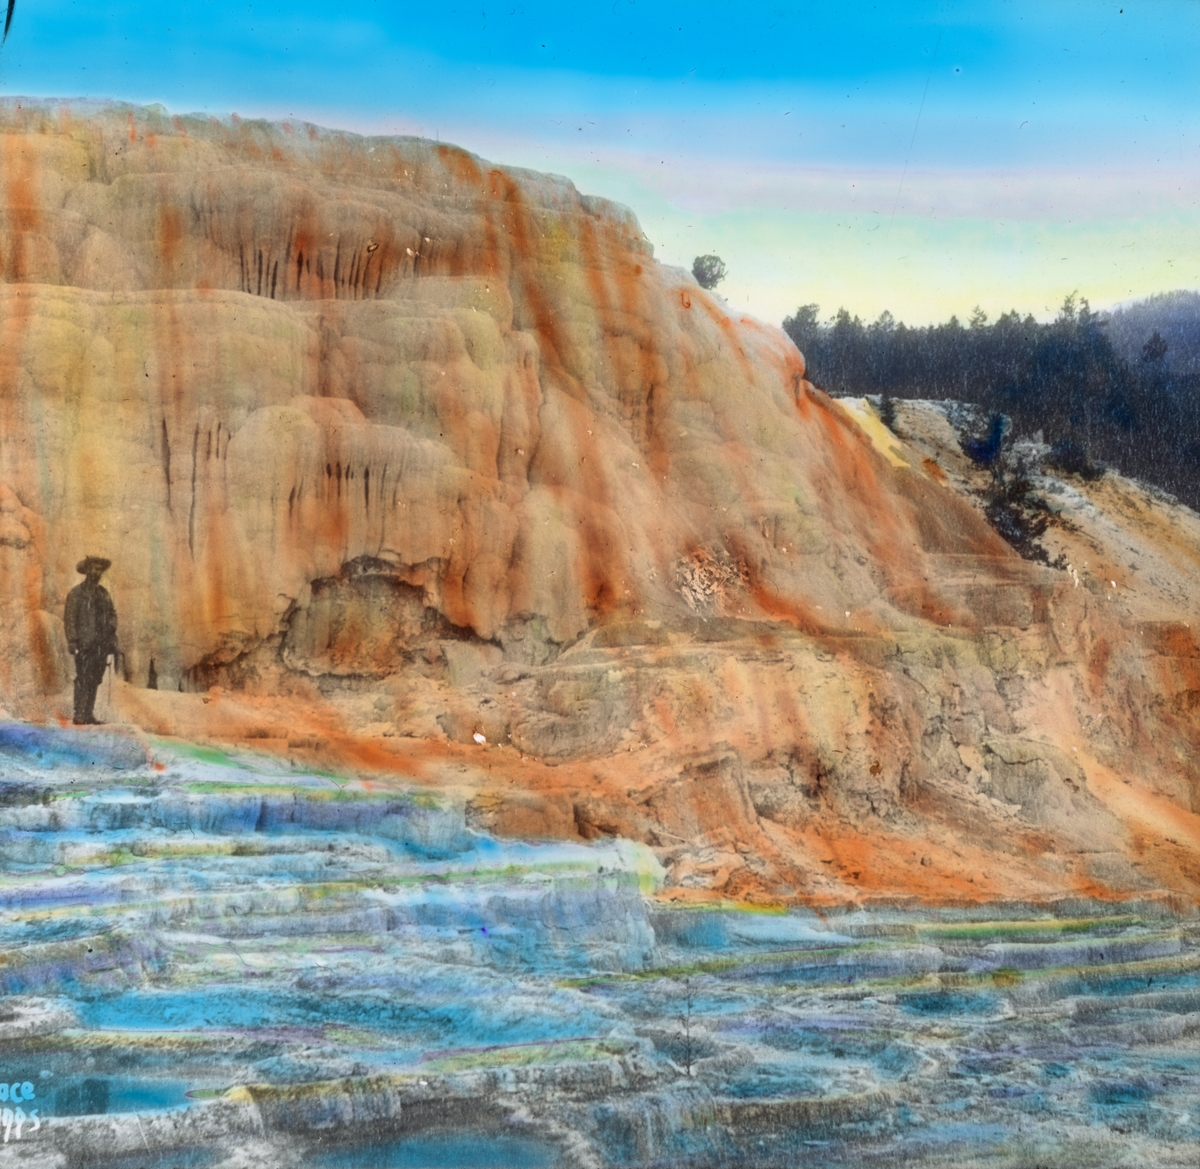 Håndkolorert dias. En mann står i Mammoth Hot Springs, som er et stort område med varme kilder i nasjonalparken Yellowstone i U.S.A. Formasjonene har vokst frem over tusenvis av år ved at varmt vann fra kildene er blitt avkjølt og har dannet kalkstein.